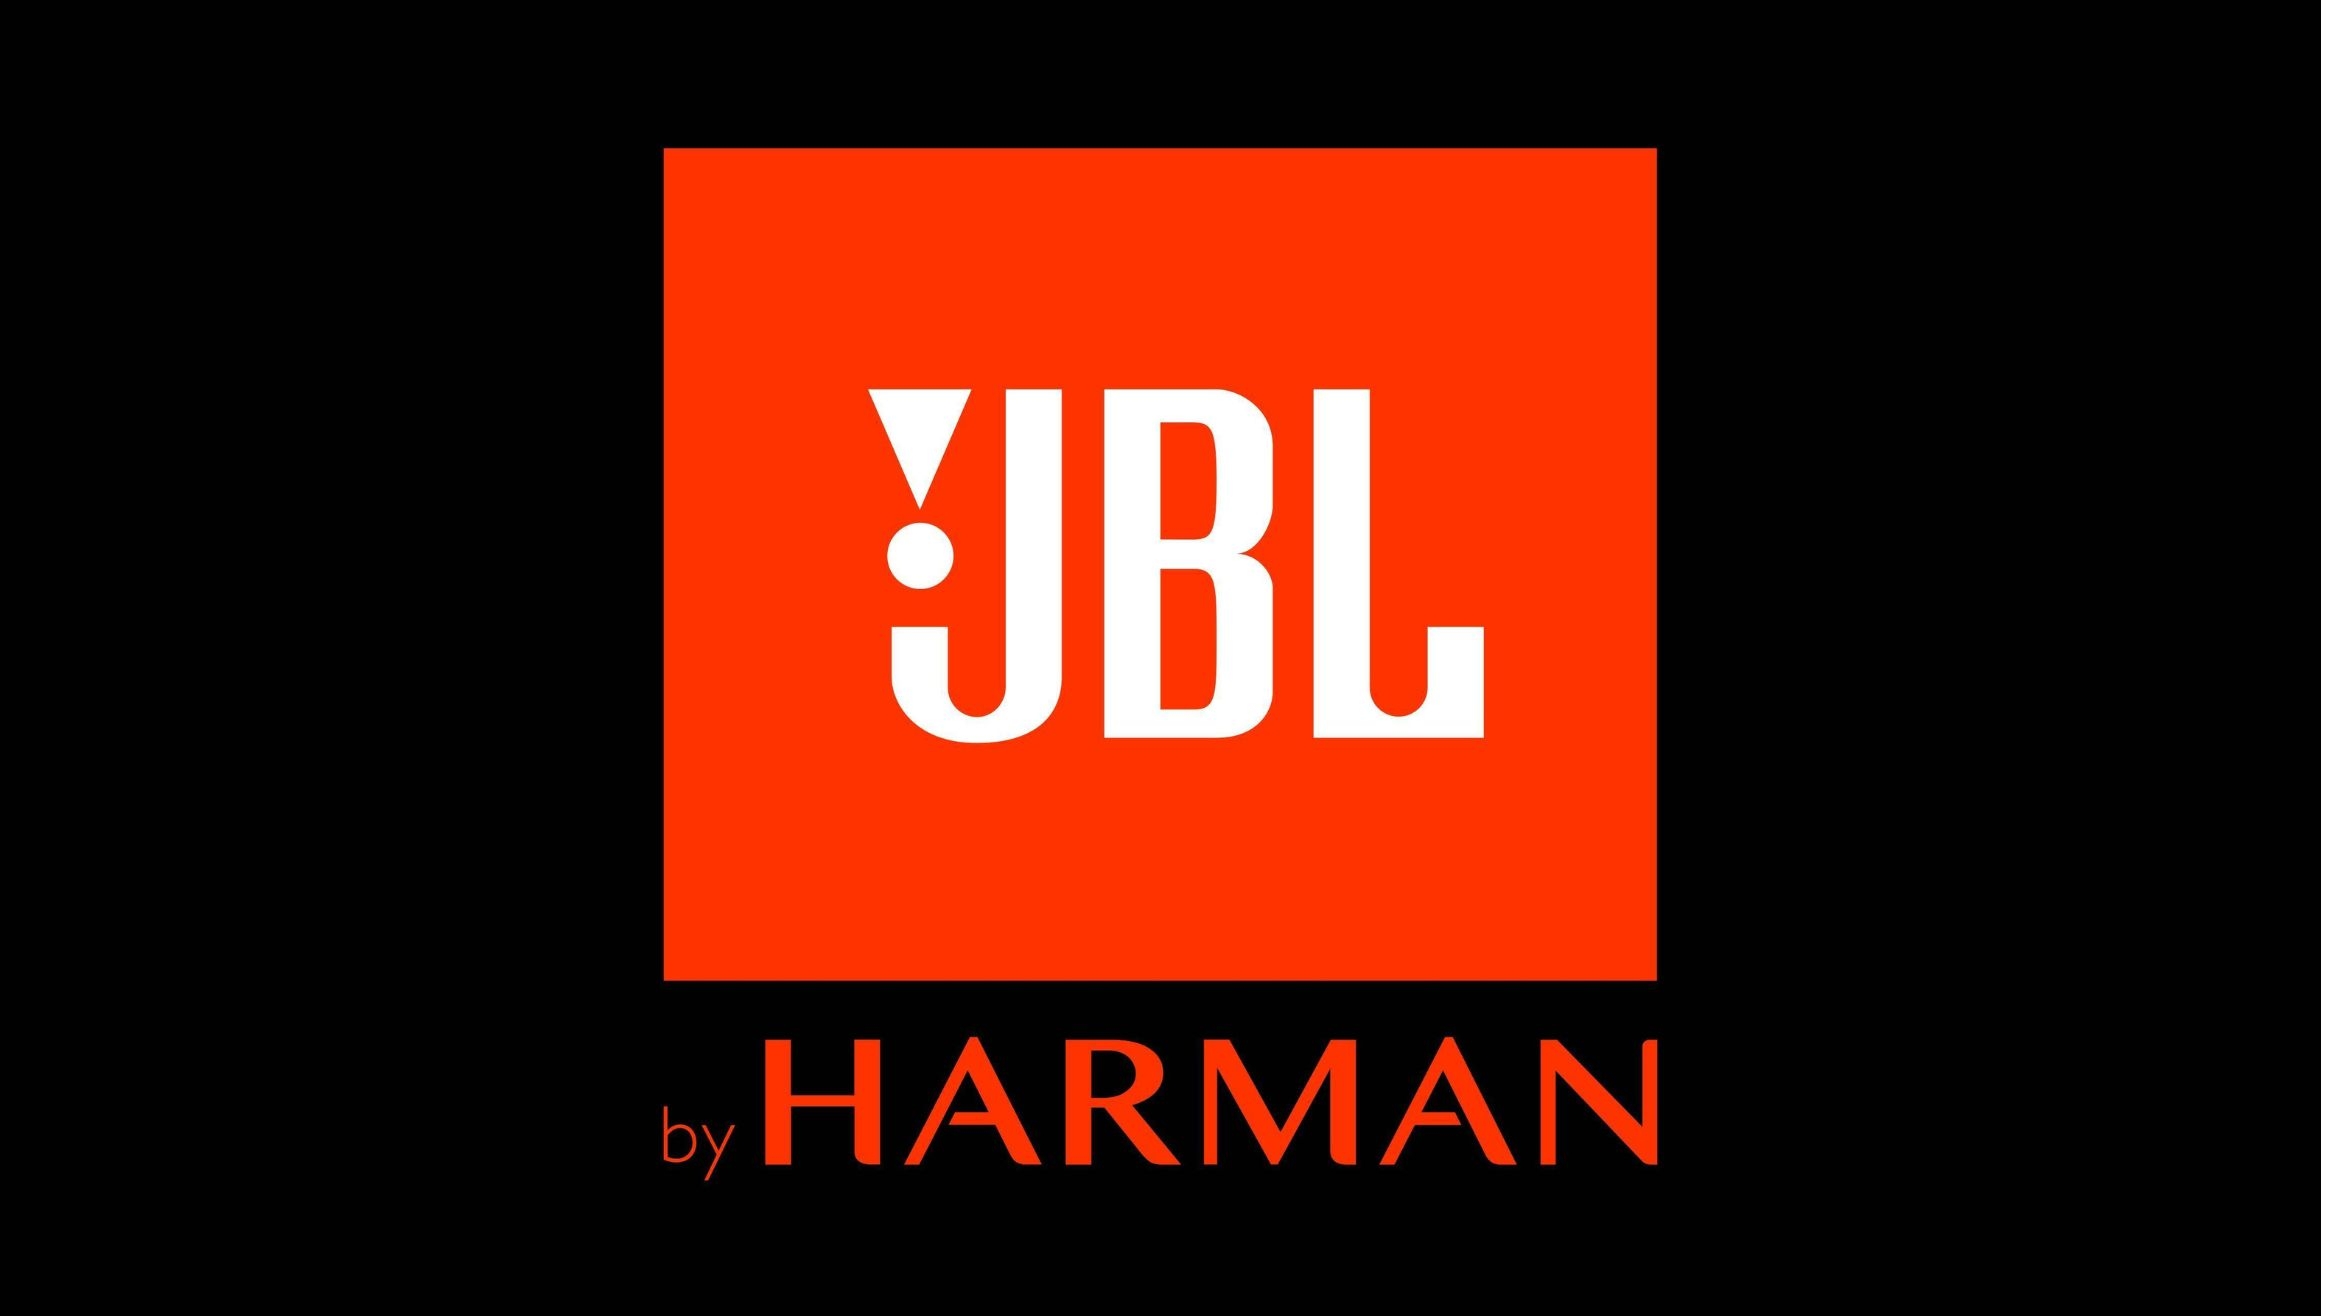 JBL ist als Lifestyle-Marke positioniert – 